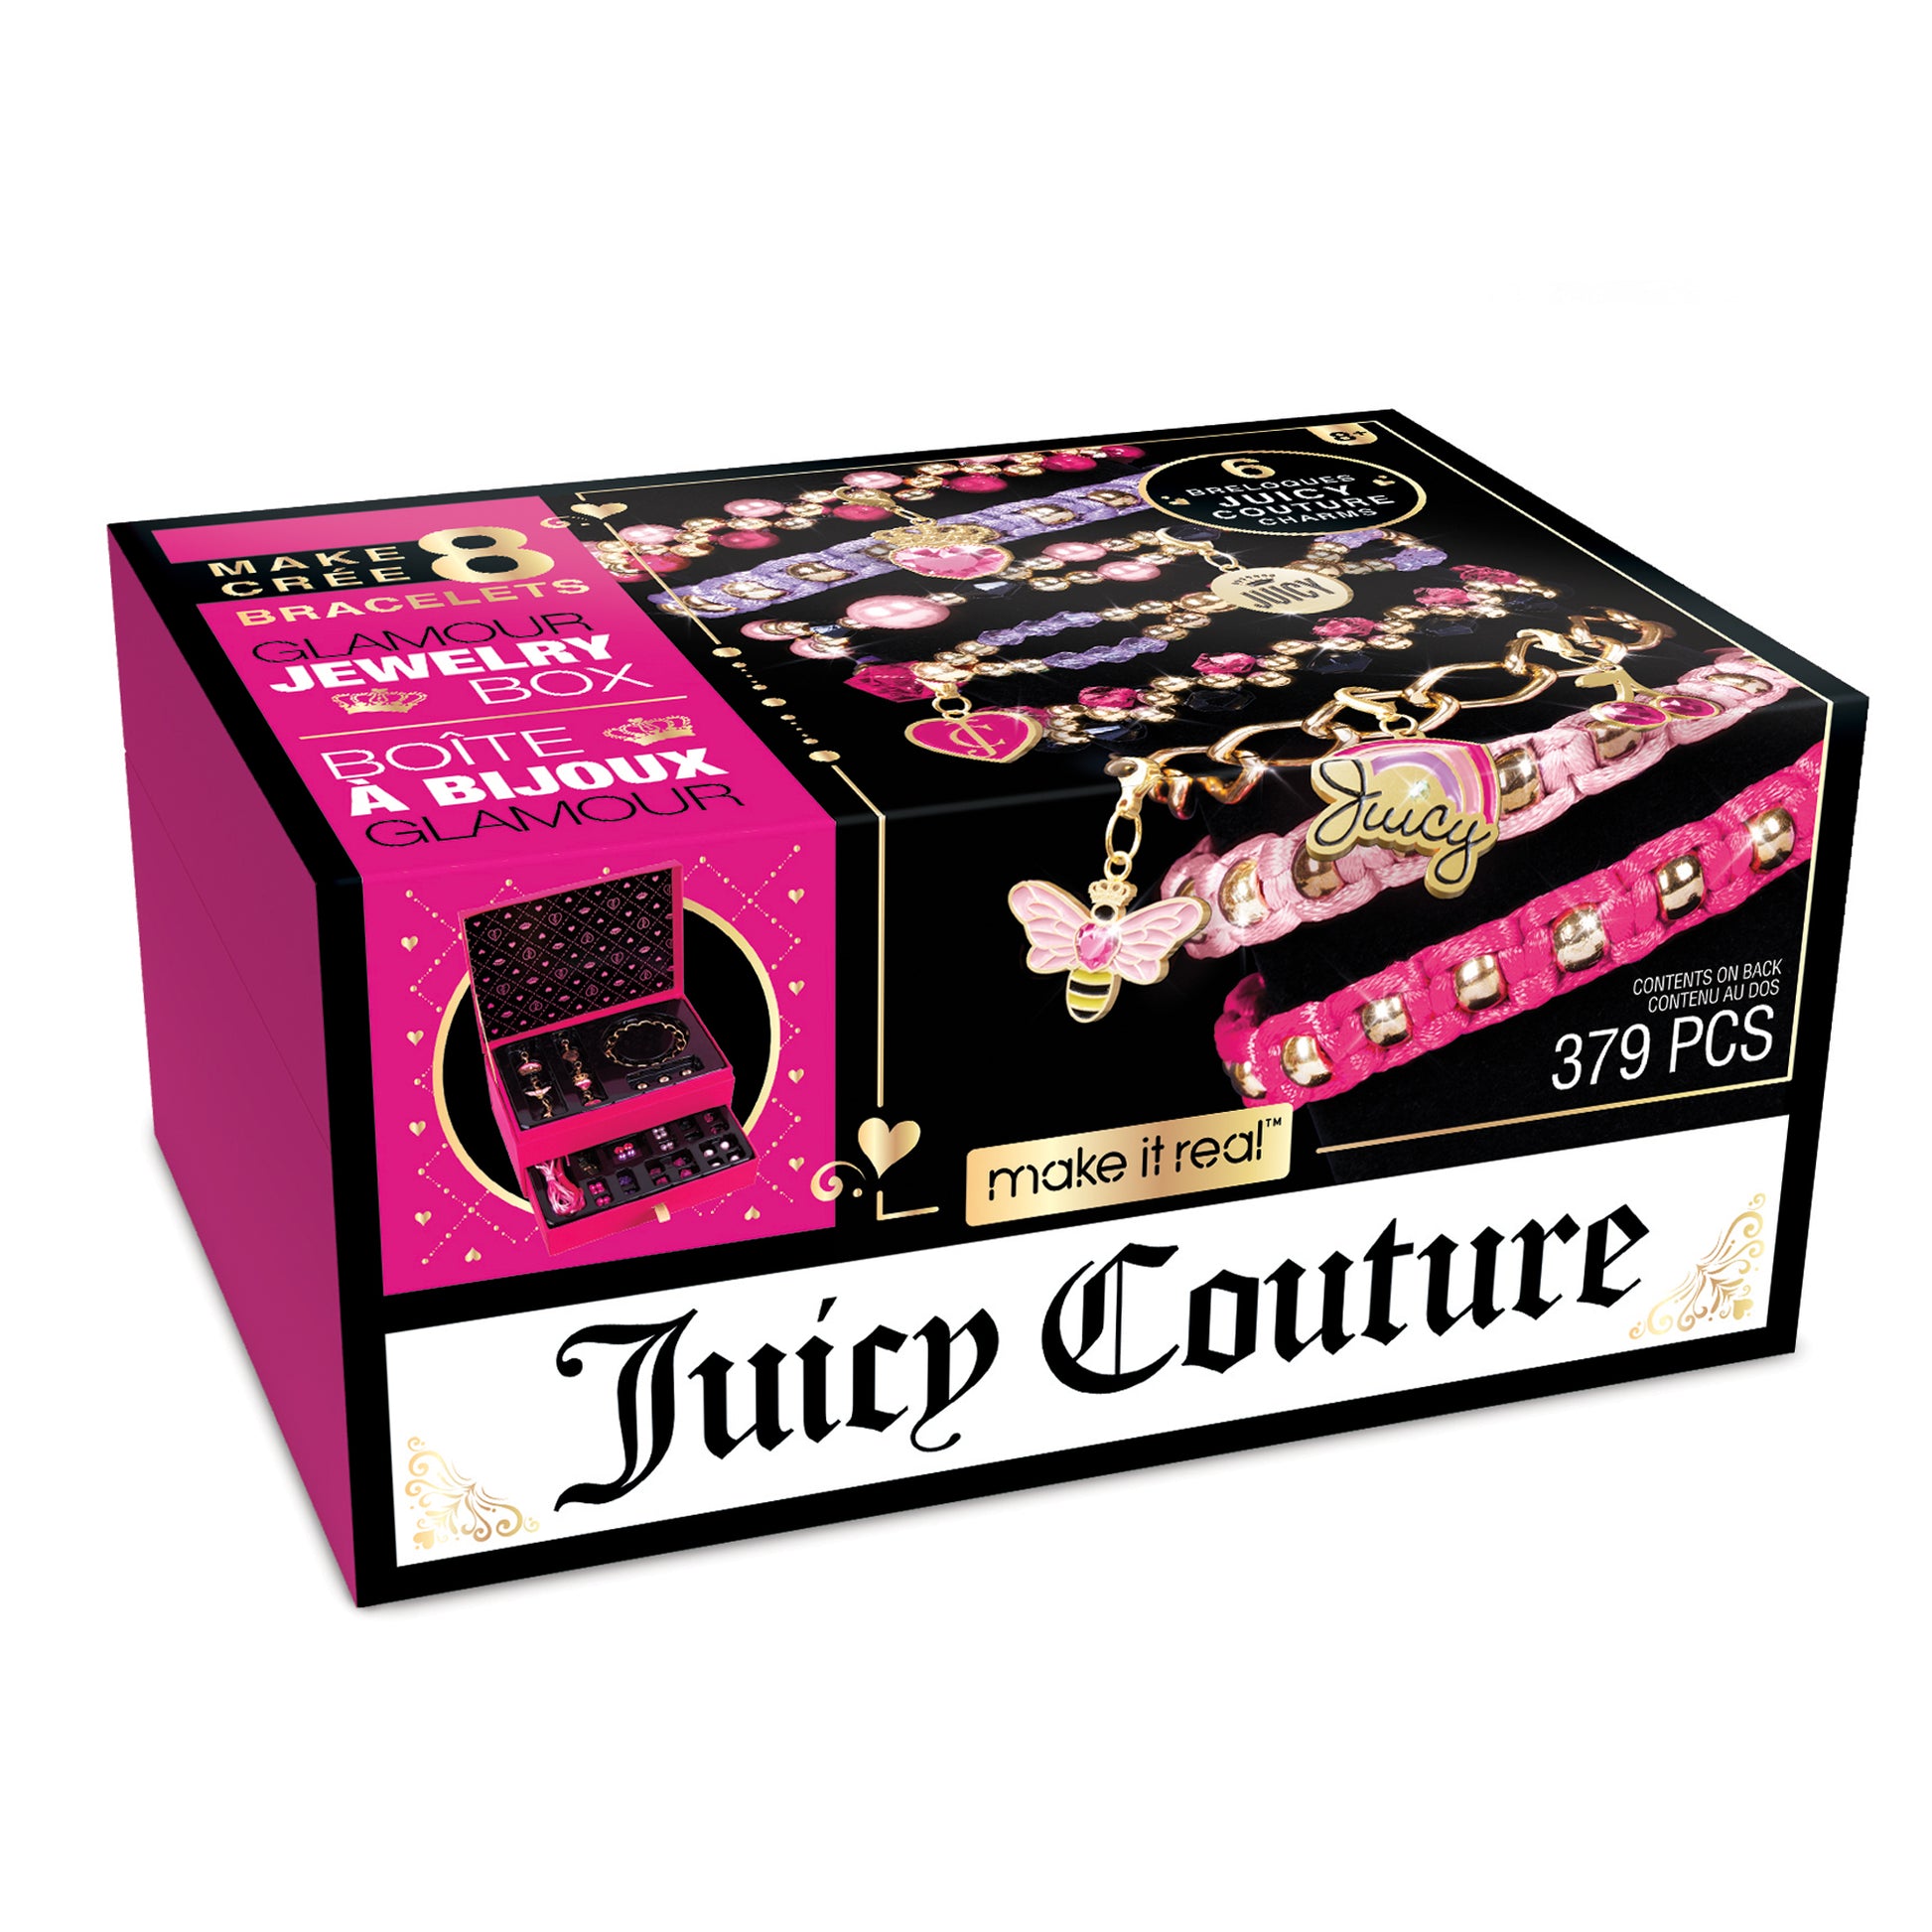 Juicy Couture Bracelet and Charm Bundle